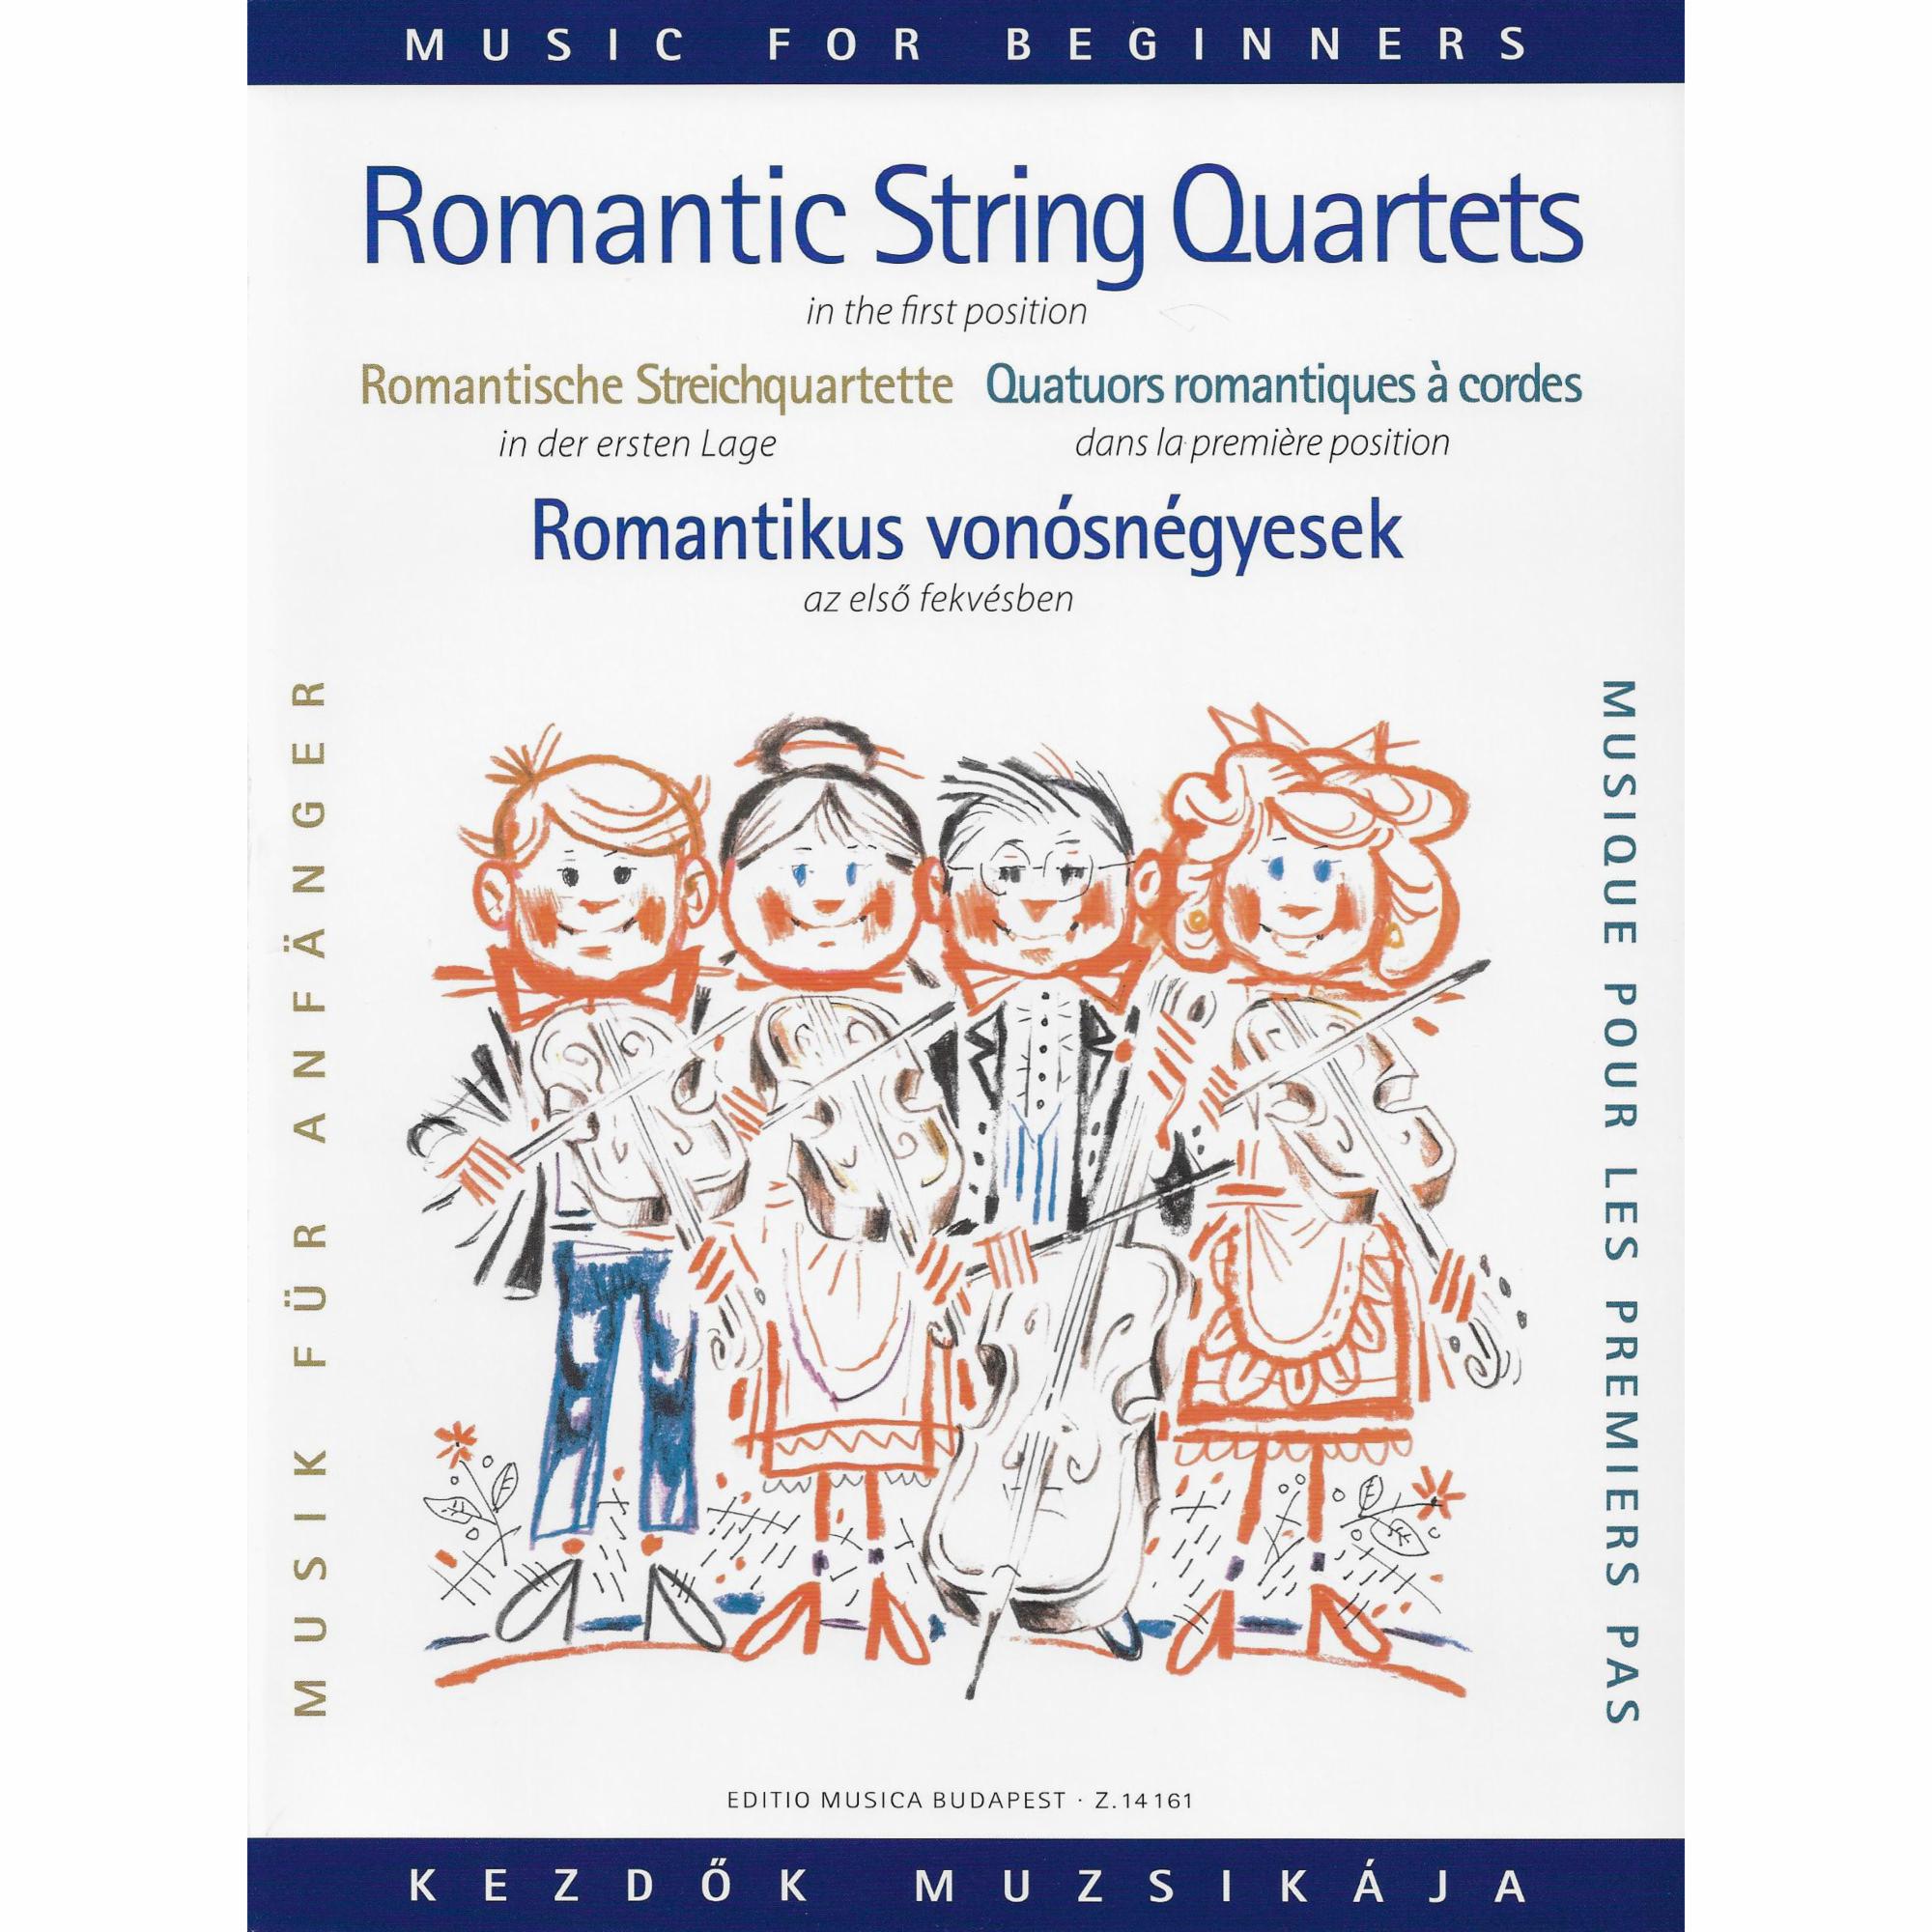 Romantic Quartet Music for Beginners